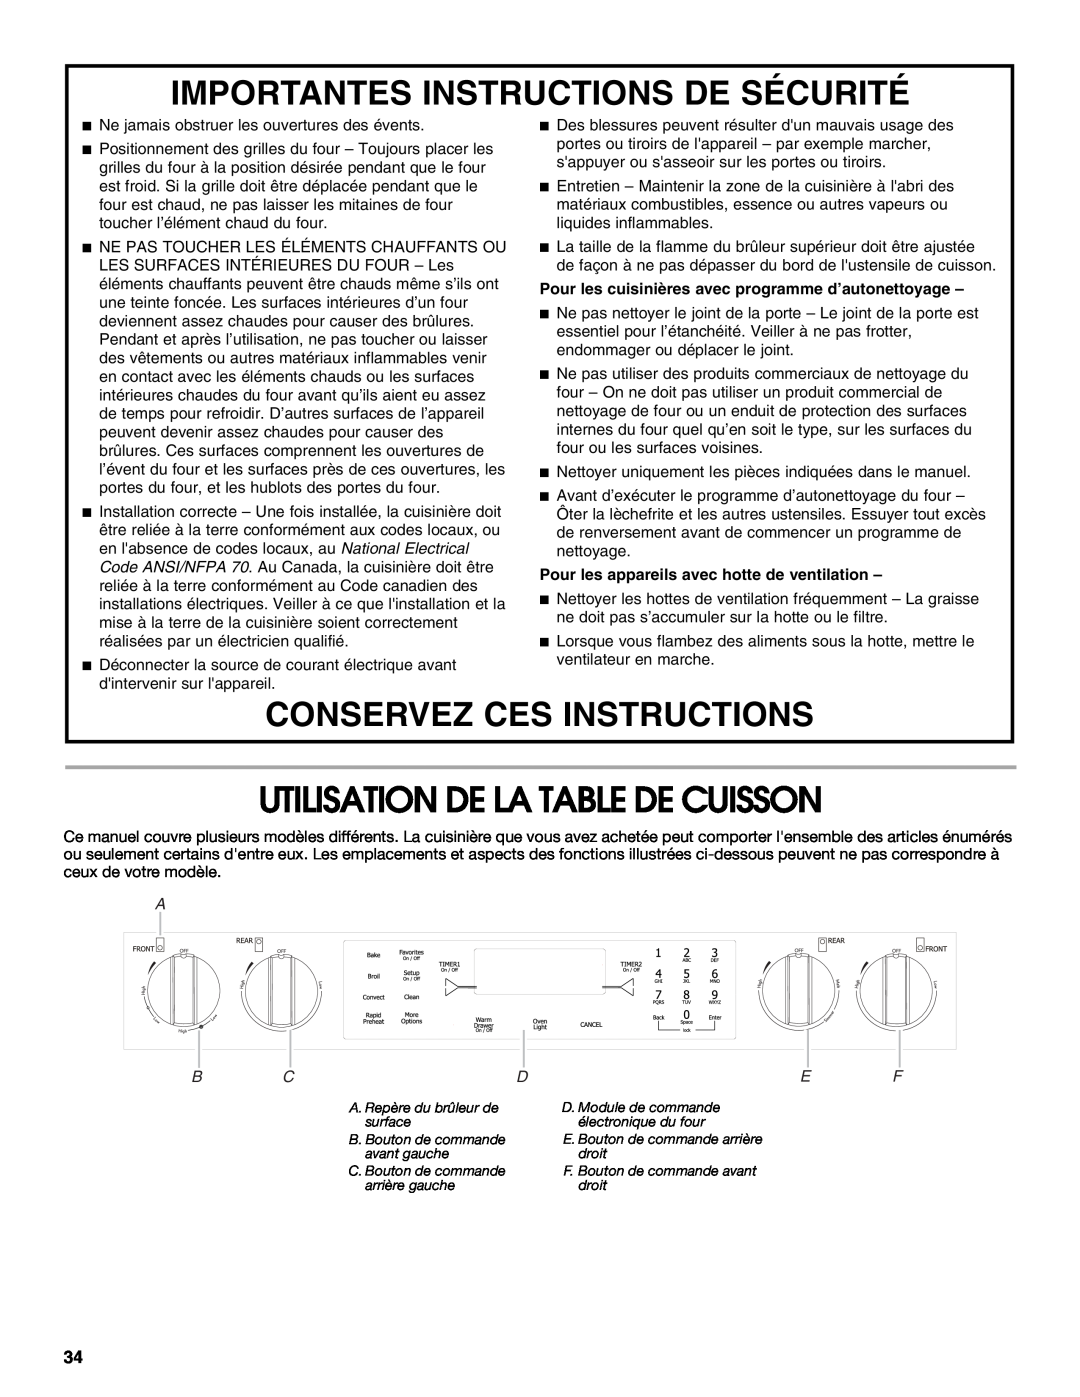 Jenn-Air JDS8860 Utilisation De La Table De Cuisson, Importantes Instructions De Sécurité, Conservez Ces Instructions 